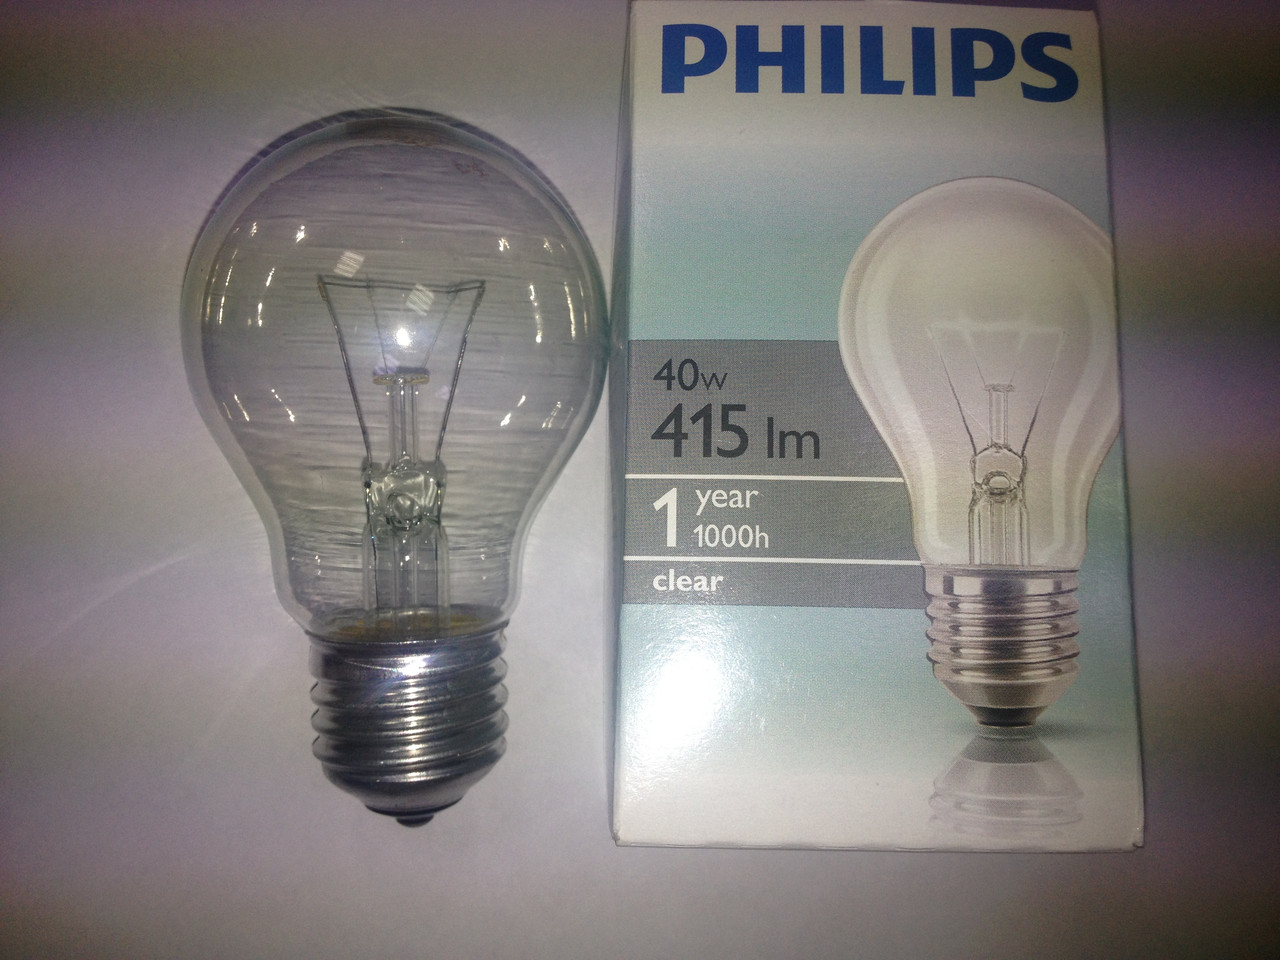  накаливания Филипс 220-40 прозр, A55 Philips 40w: продажа, цена в .